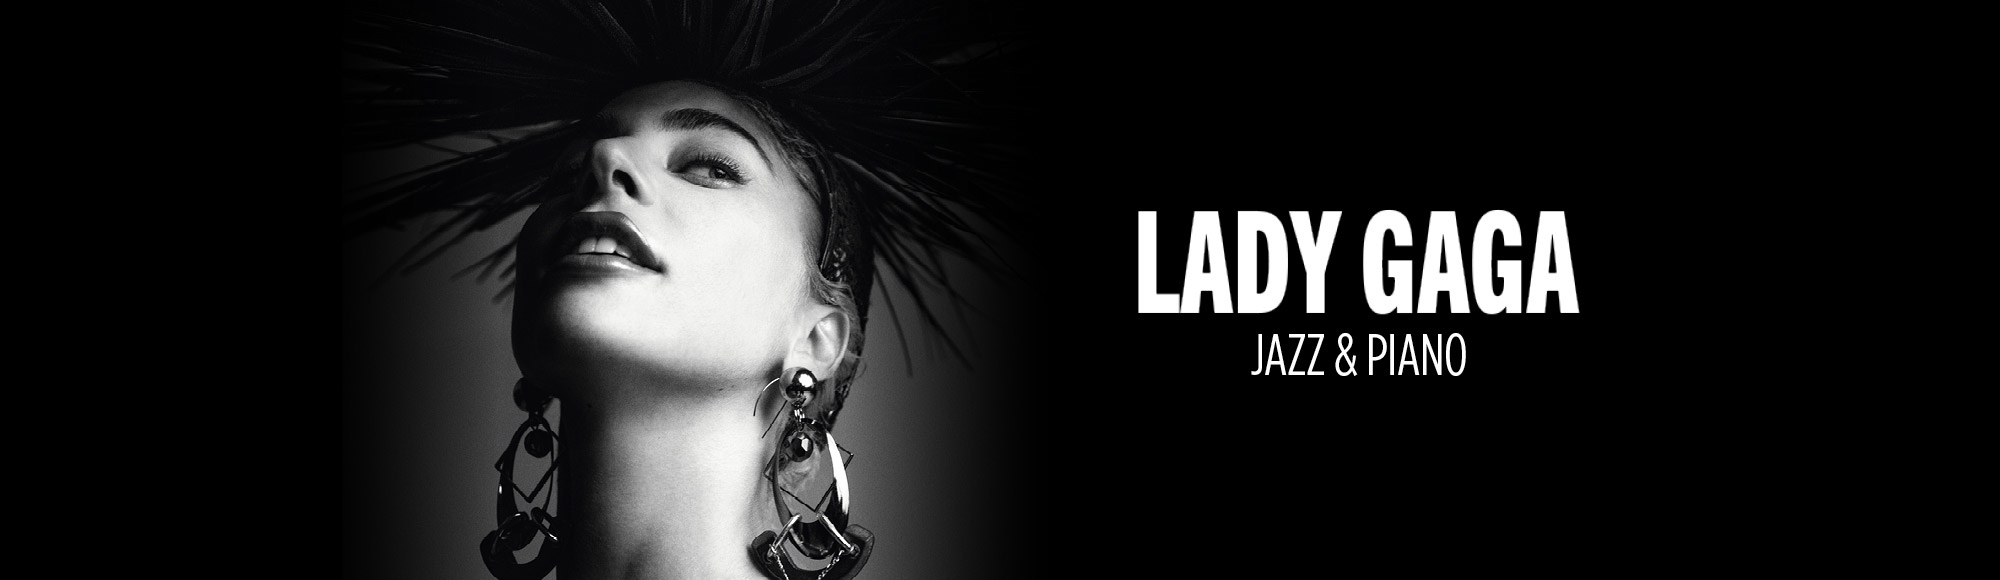 Lady Gaga: Jazz & Piano show